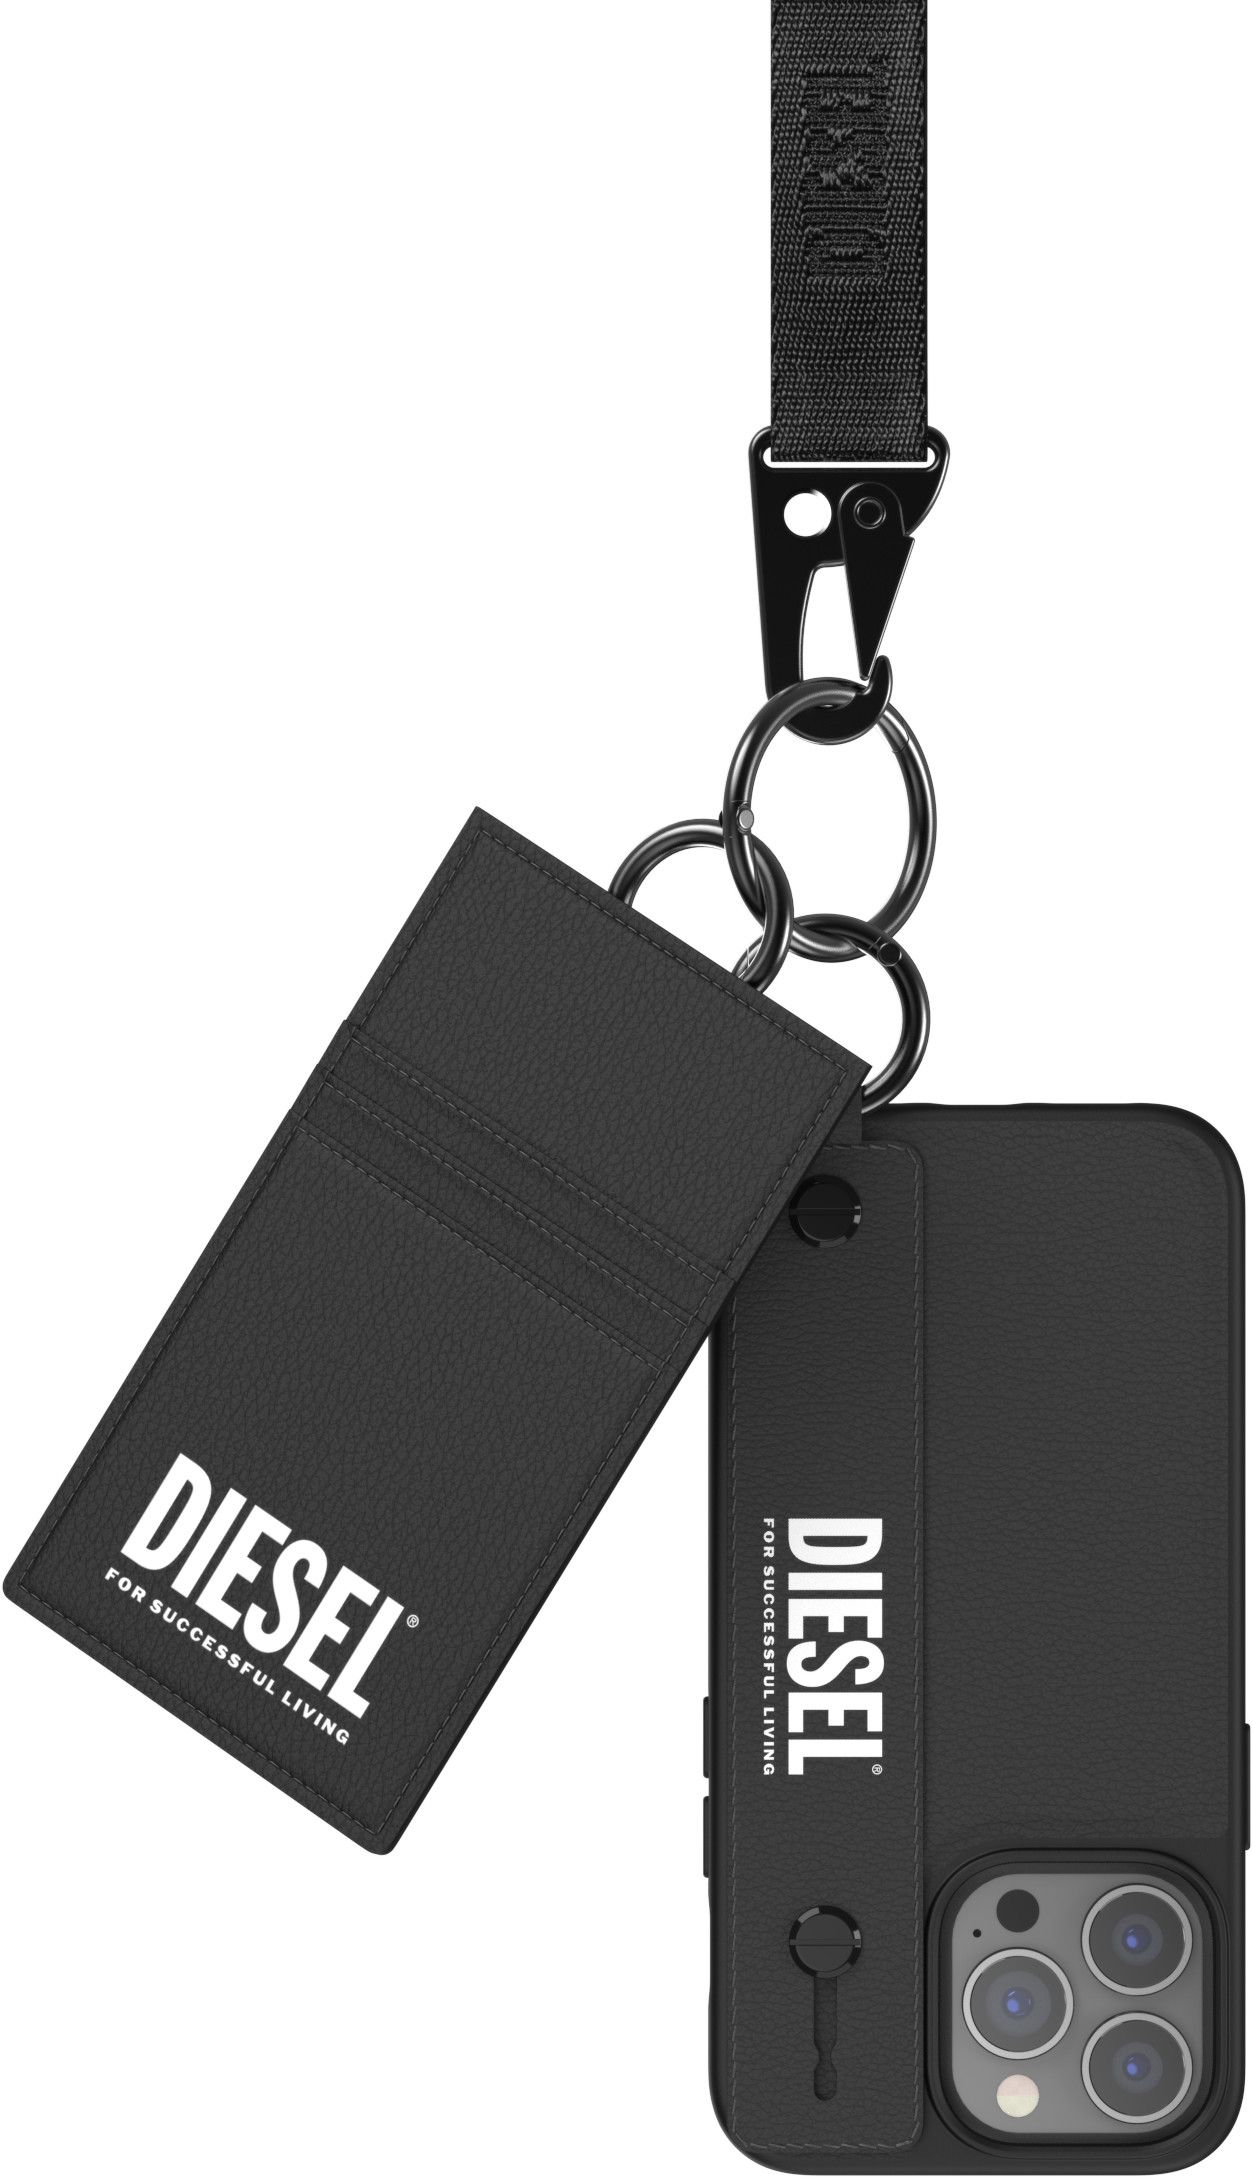 Diesel Handstrap Case + Card Pocket and Lanyard